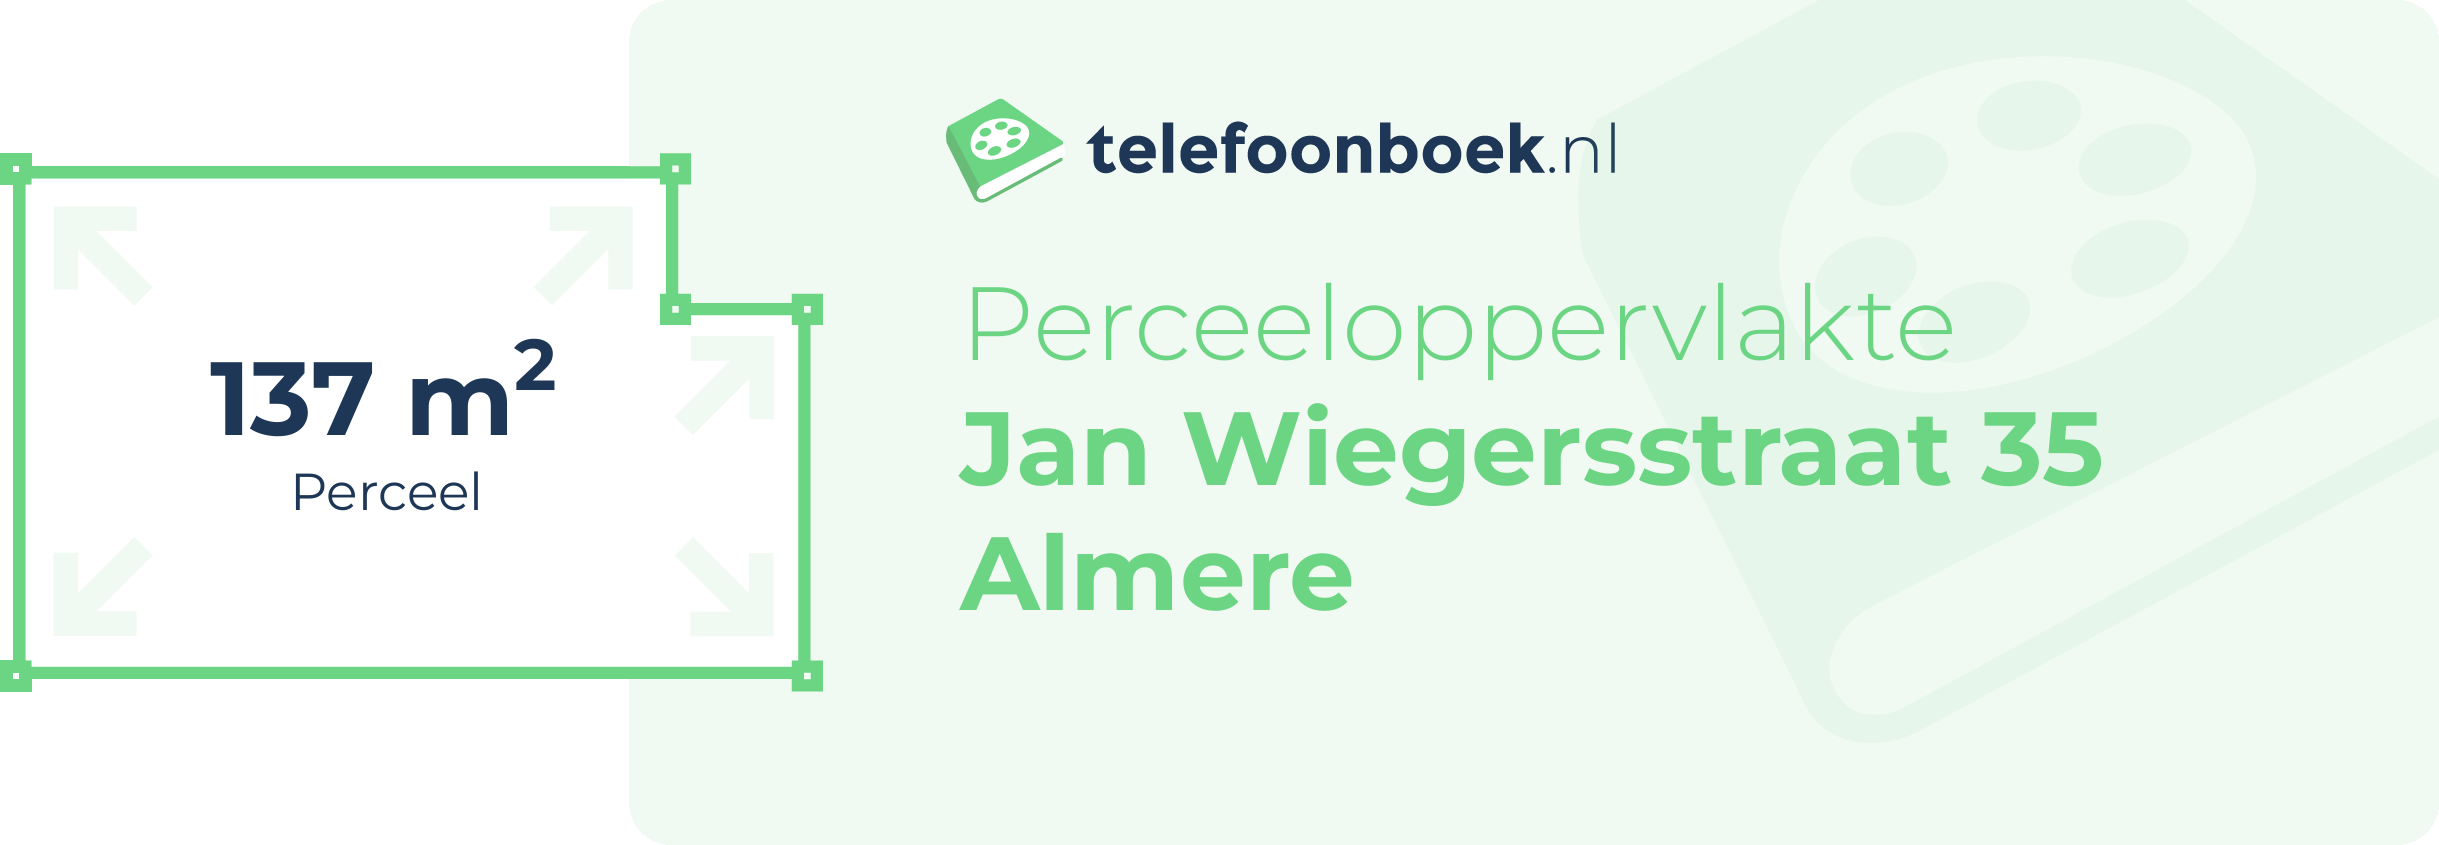 Perceeloppervlakte Jan Wiegersstraat 35 Almere